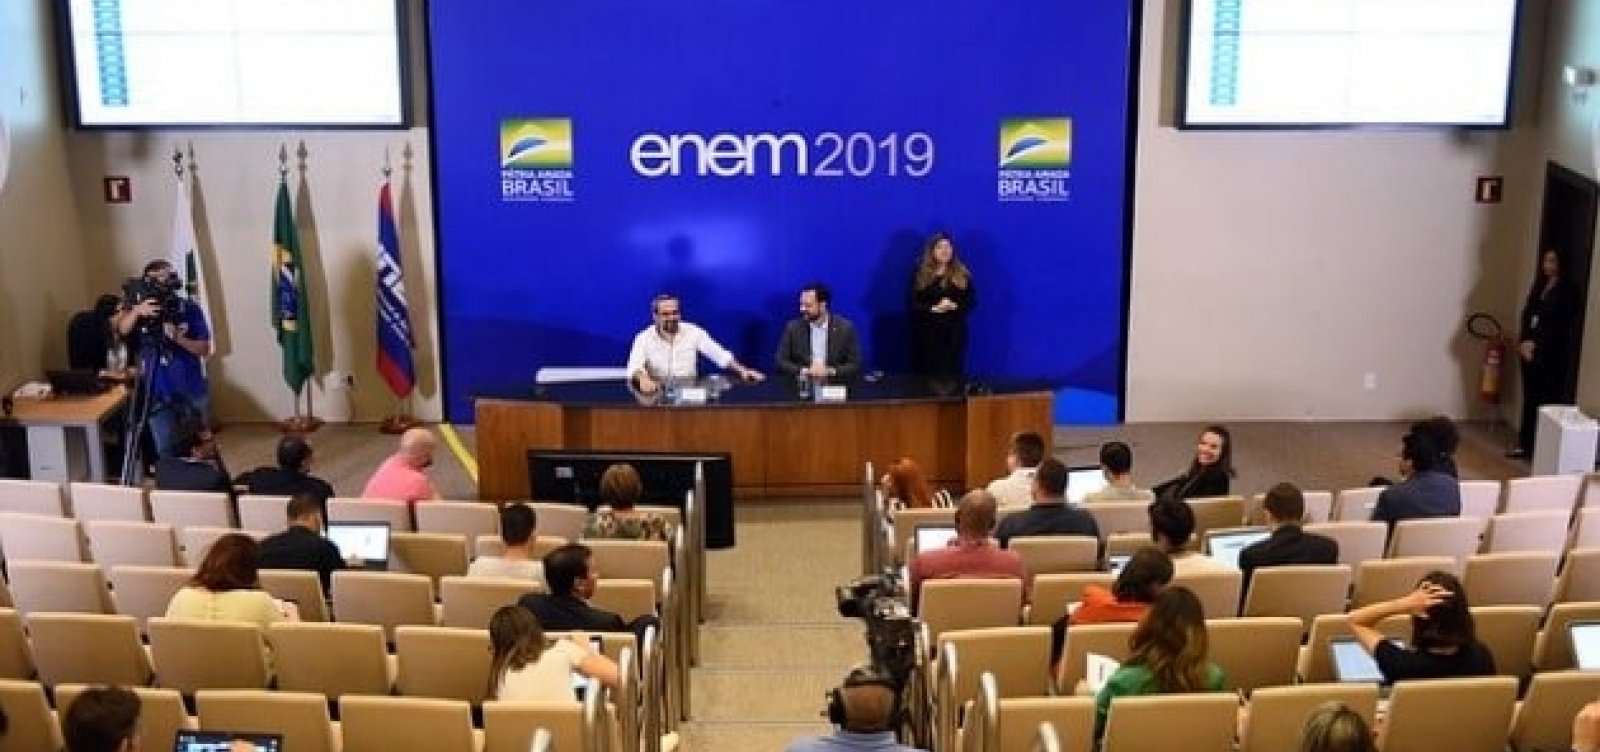 Segundo dia de provas do Enem tem abstenção de 27,3% na Bahia